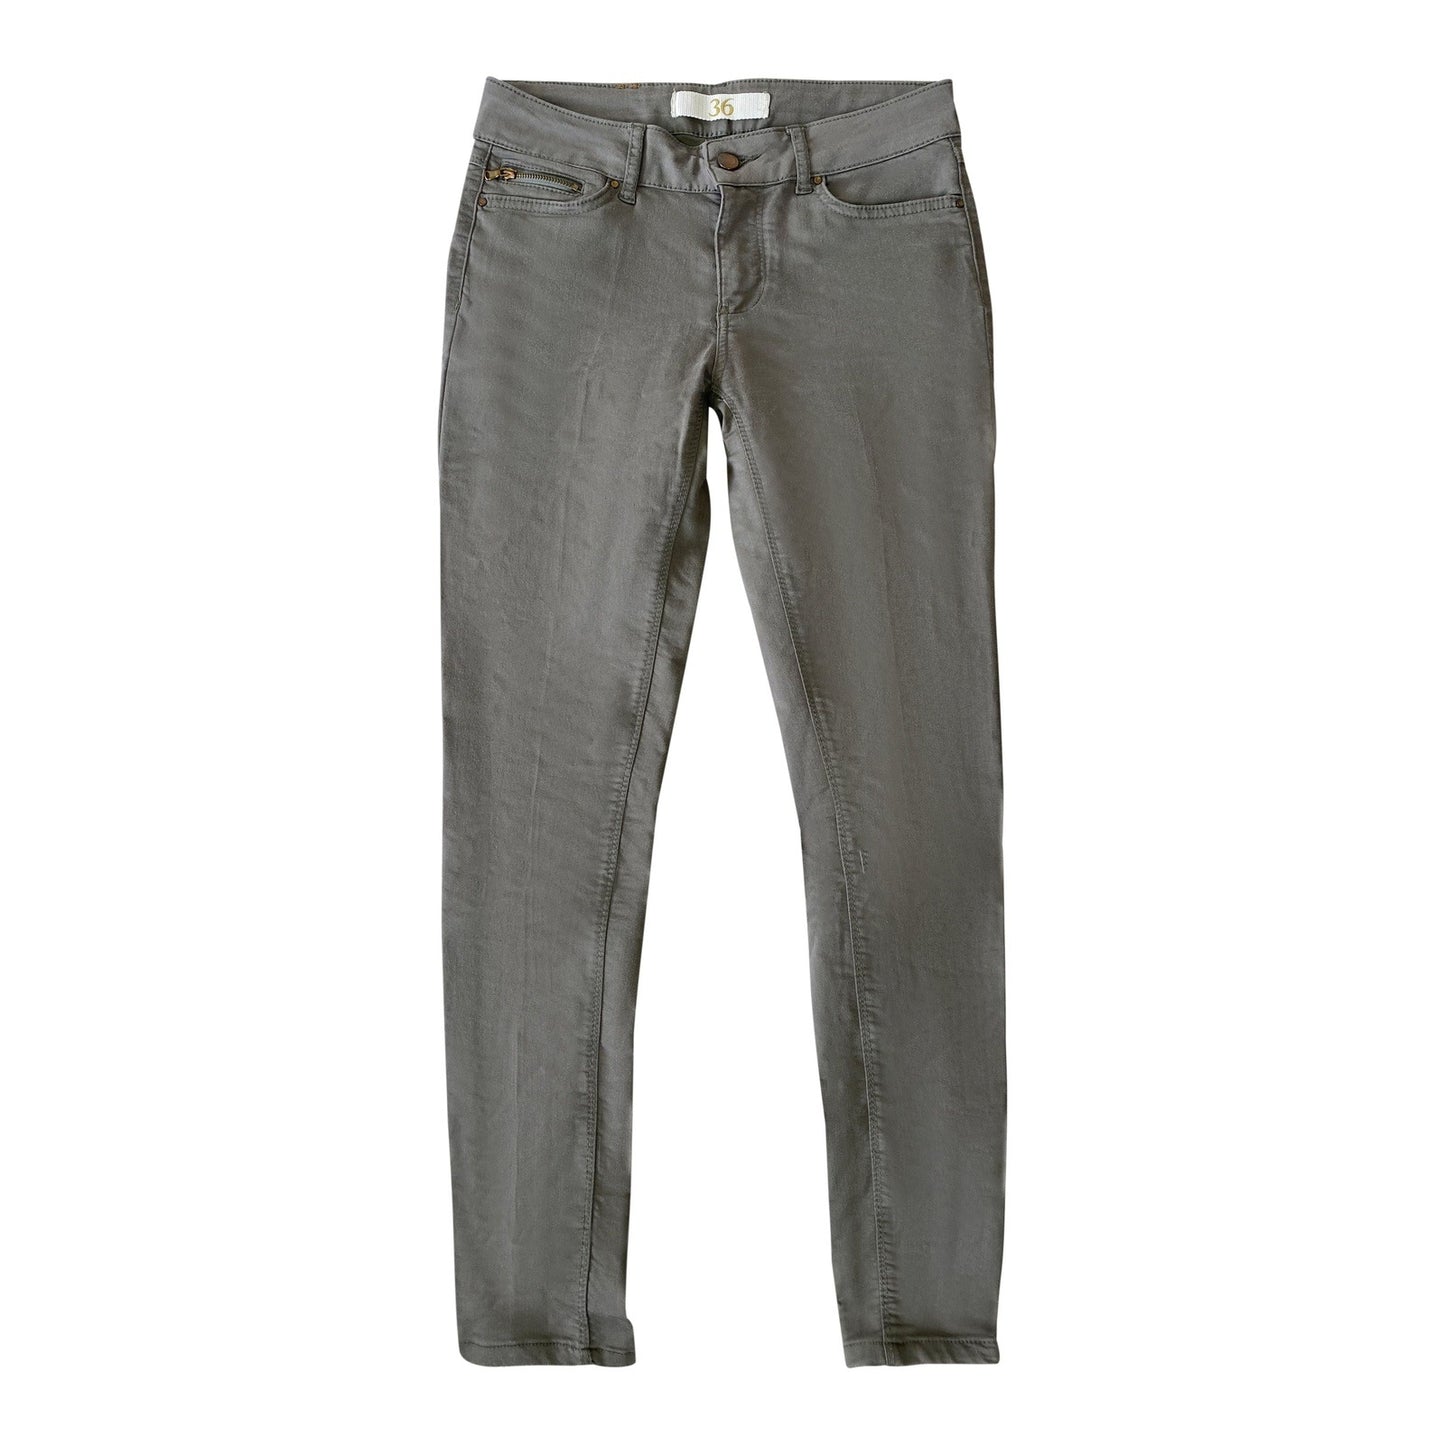 Zara olive skinny jeans | size 36